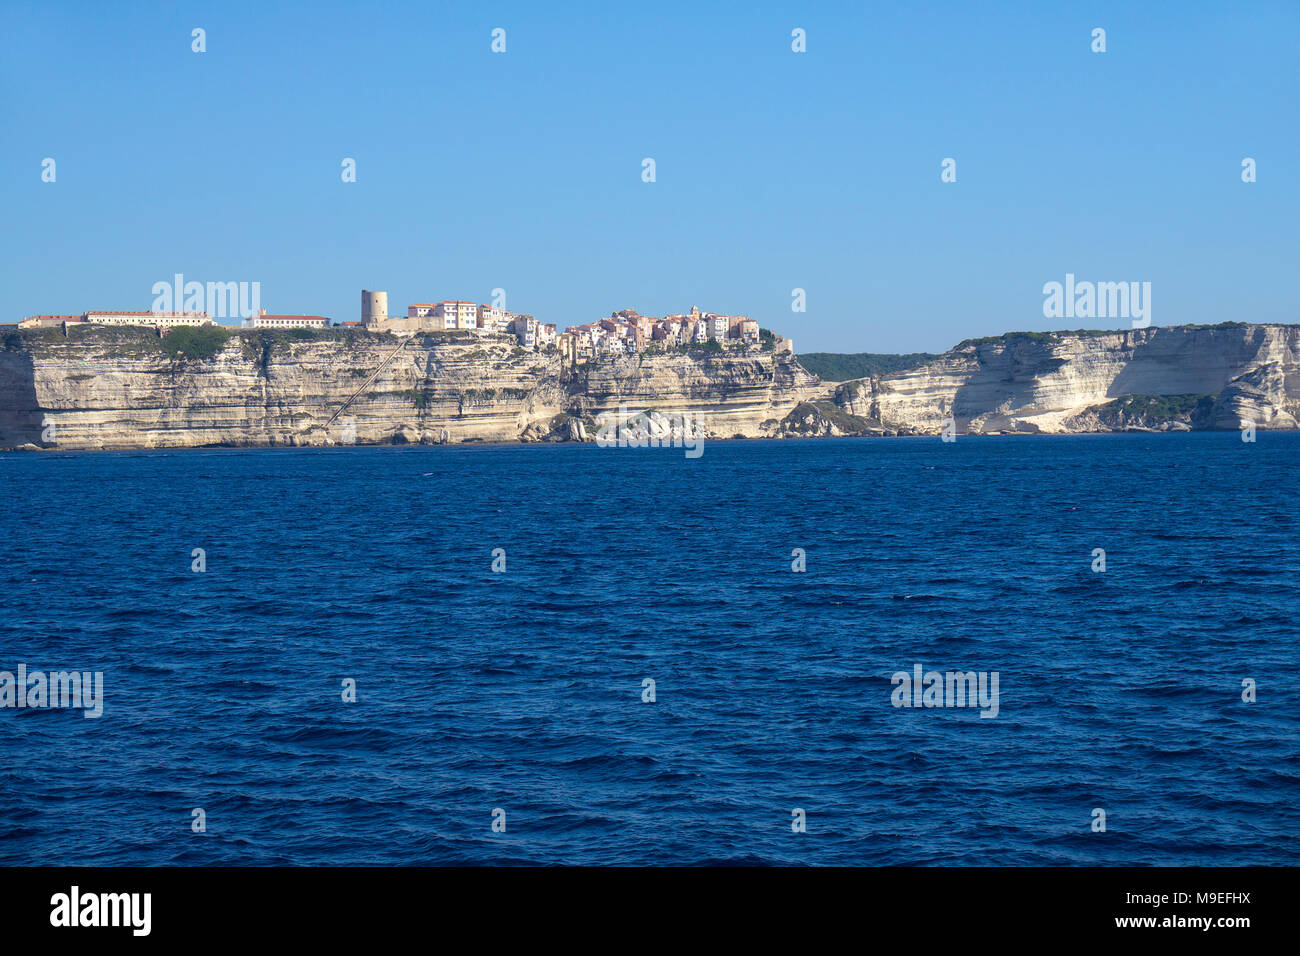 Bonifacio, ville portuaire historique ancien construit sur une falaise de calcaire, le détroit de Bonifacio, Corse, France, Europe, mer Méditerranée Banque D'Images